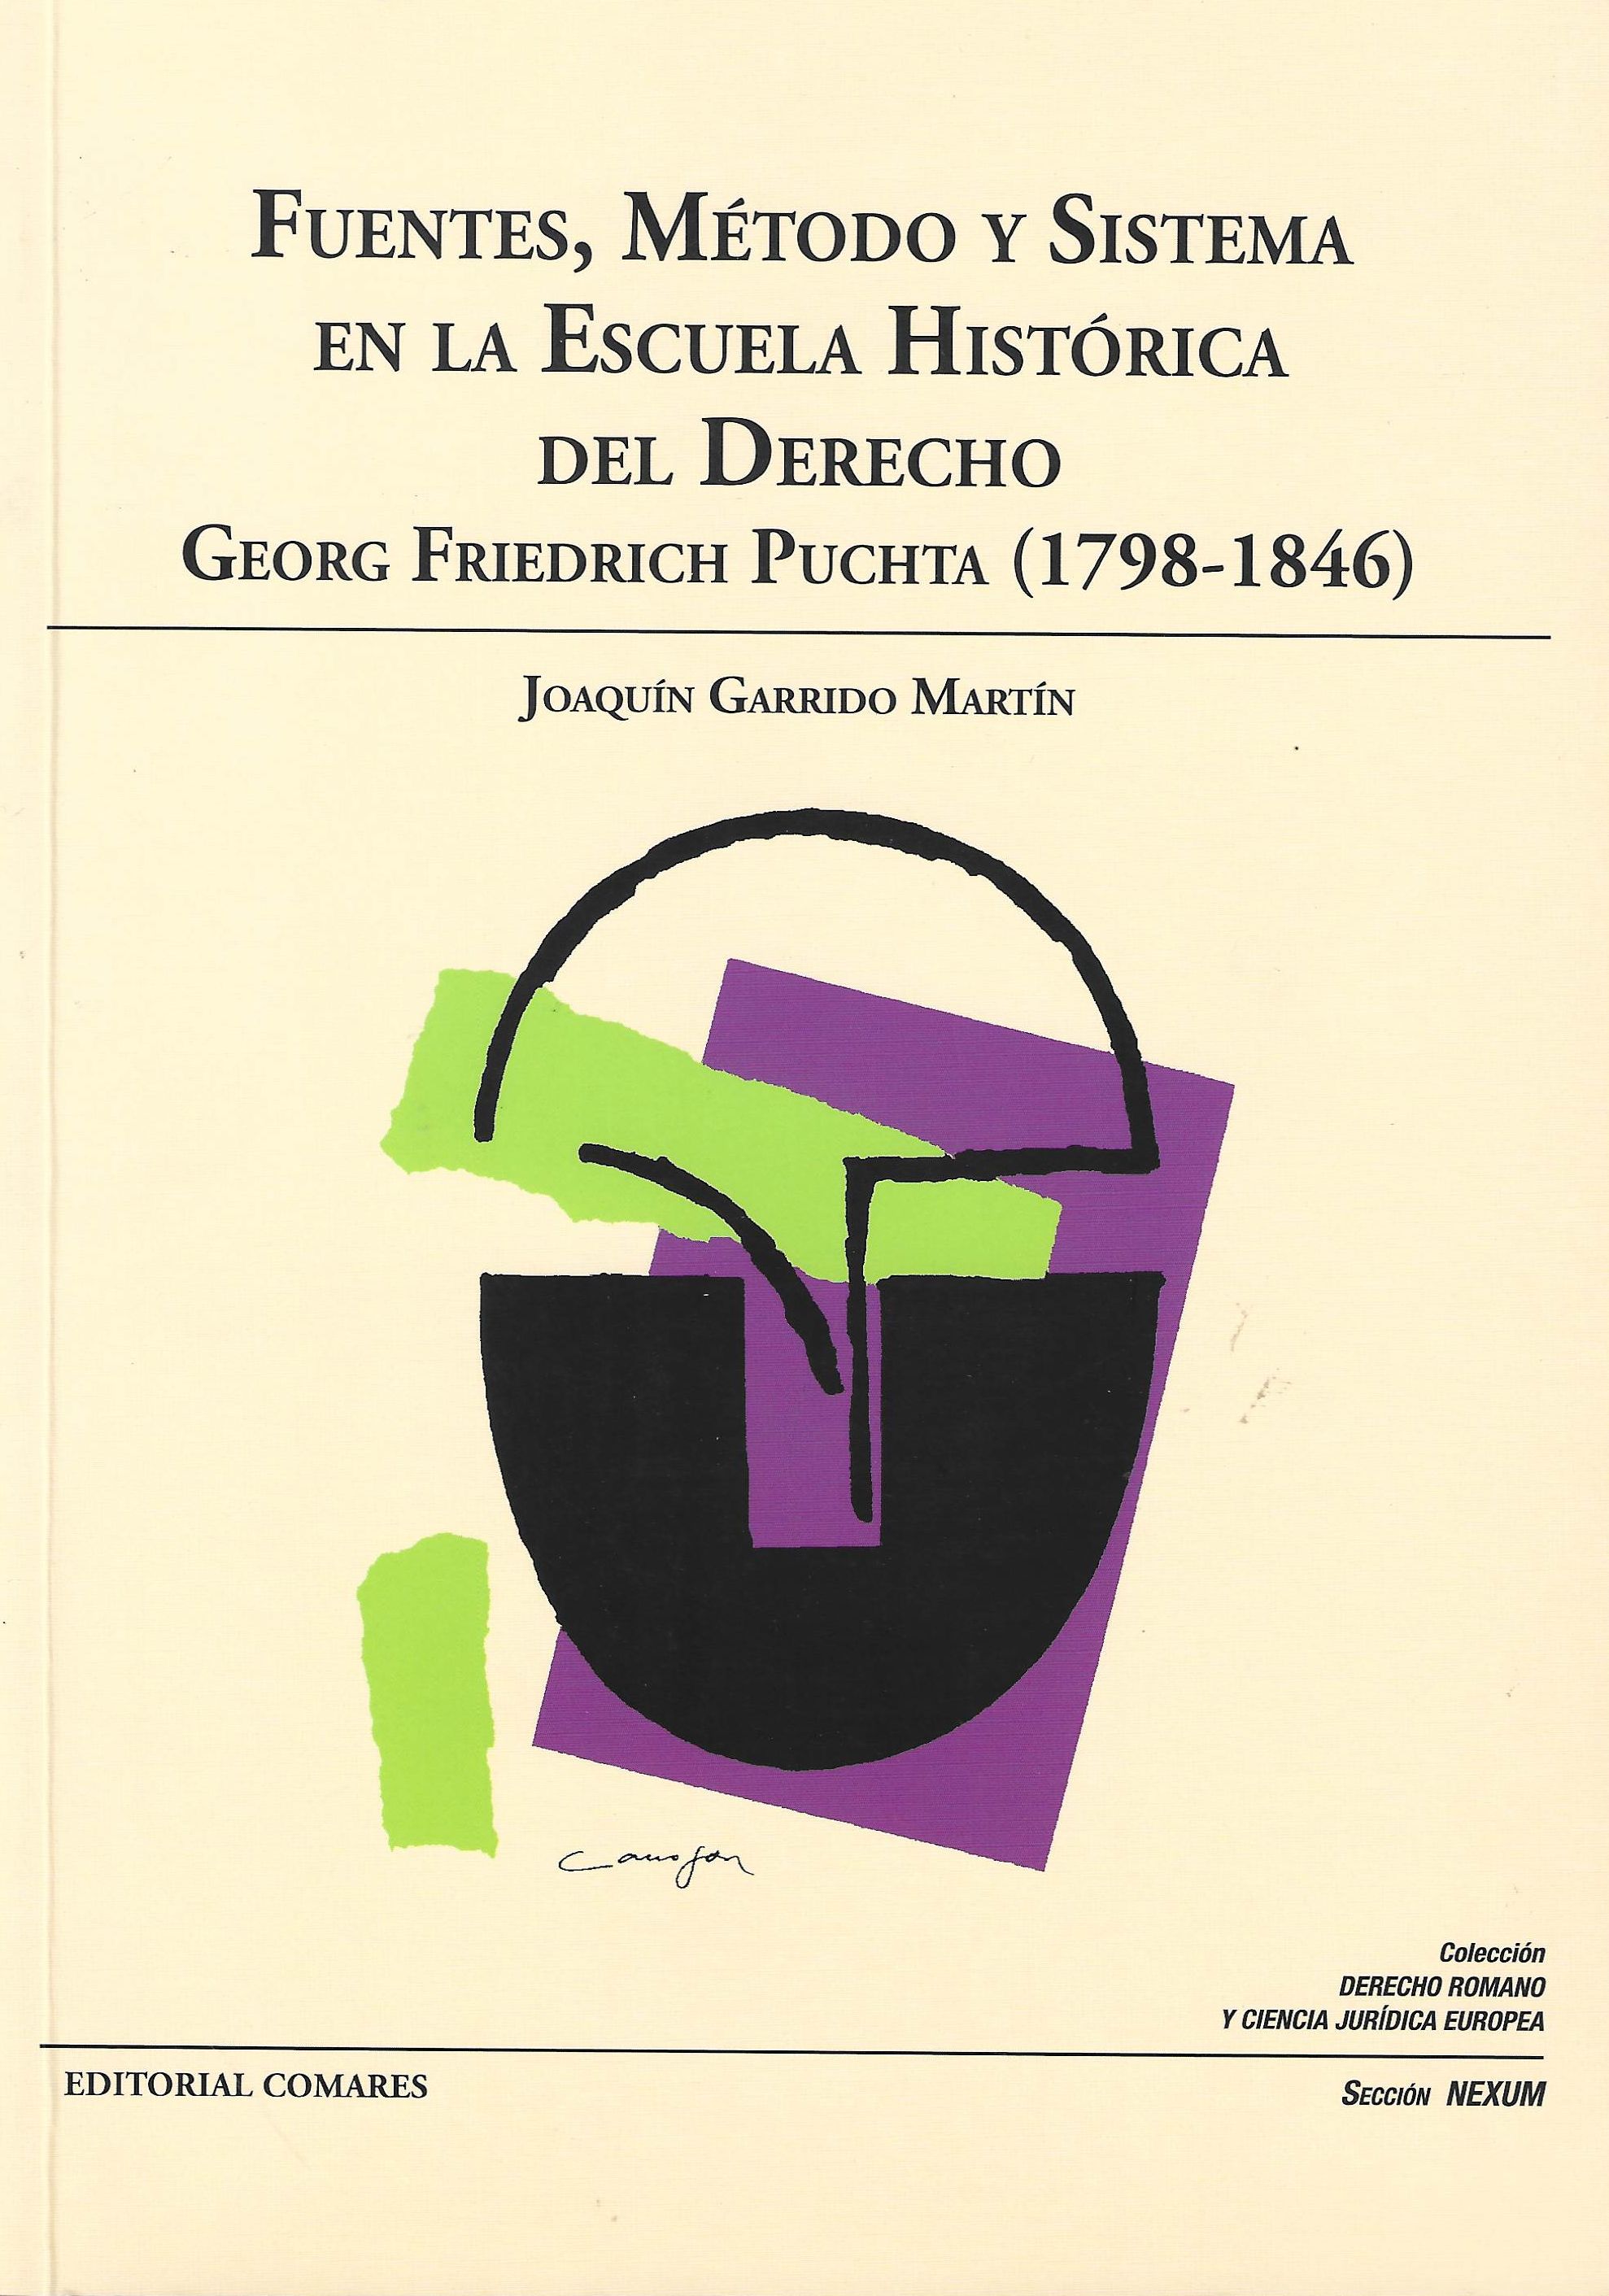 Imagen de portada del libro Fuentes, método y sistema en la Escuela Histórica del derecho